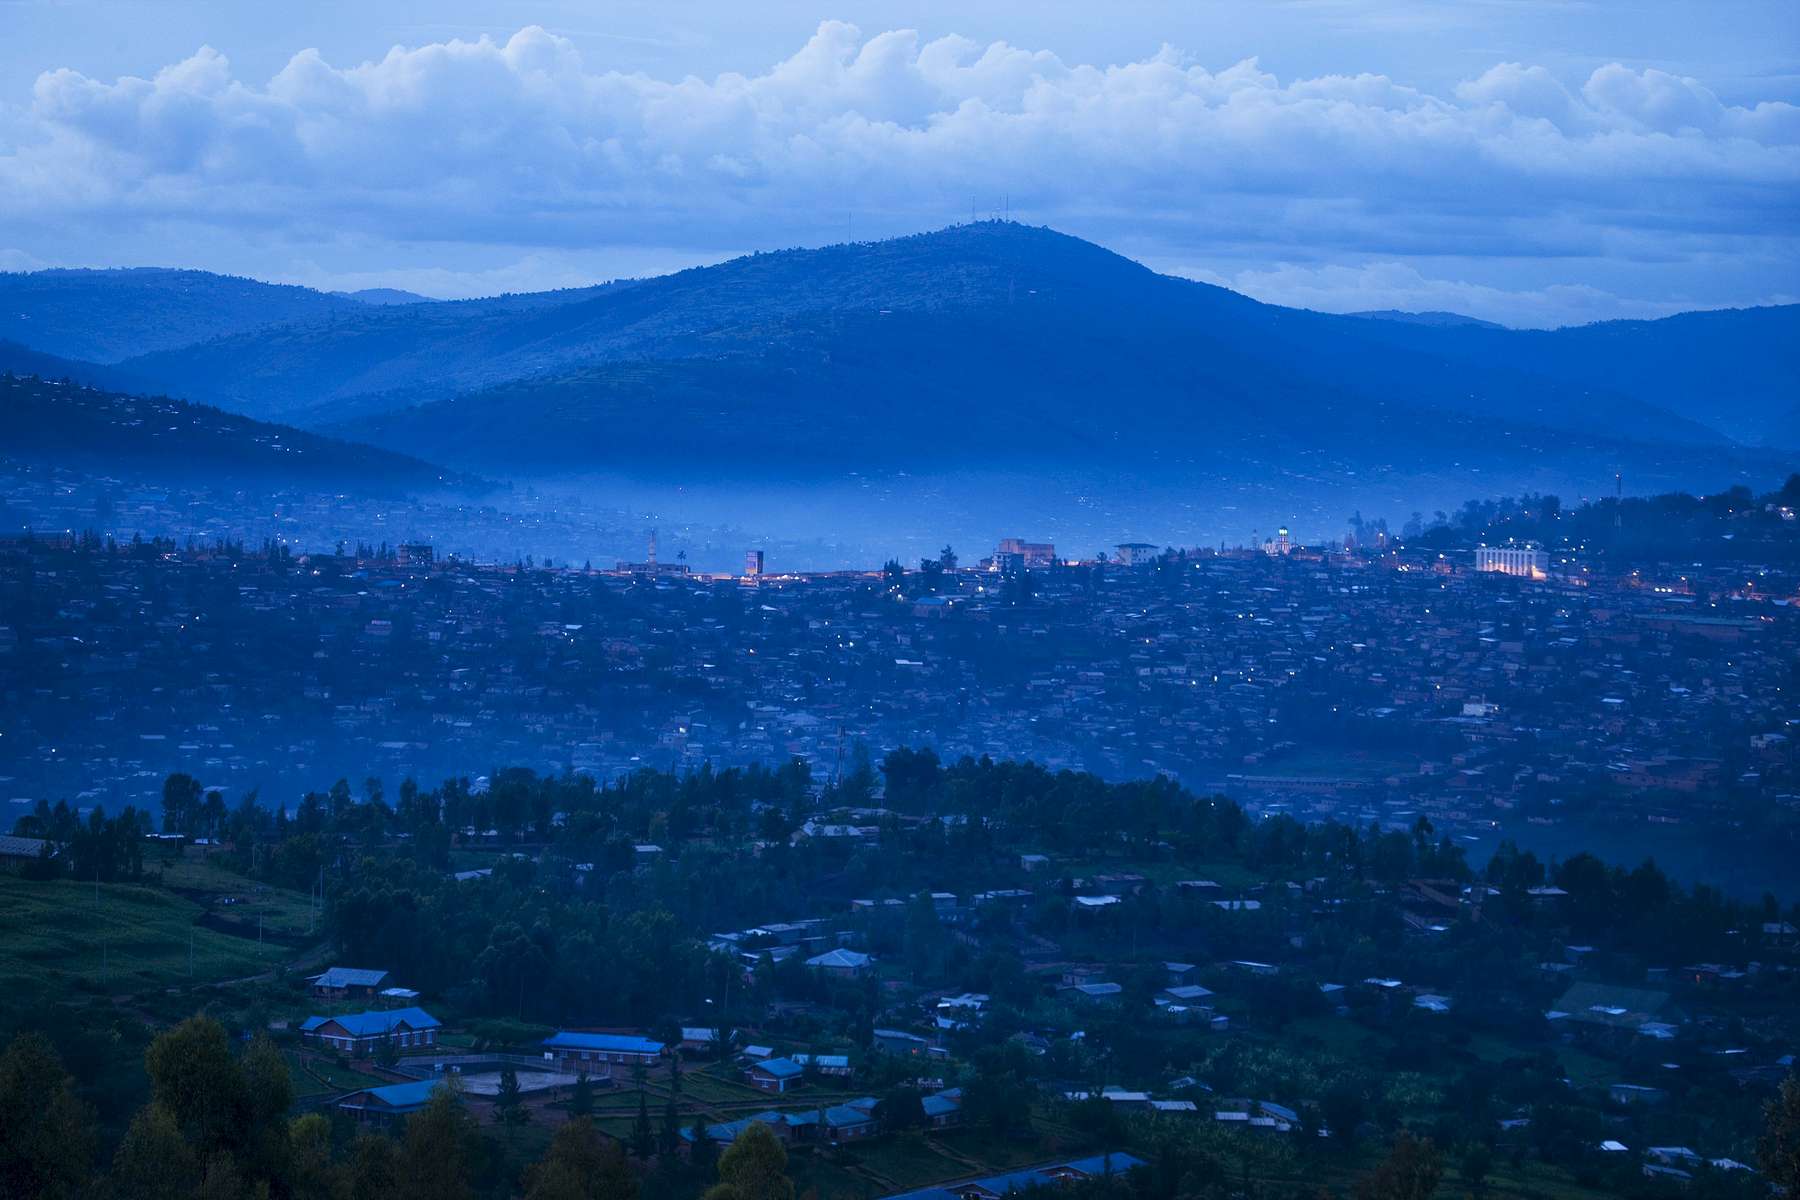 Kigali Rwanda at dusk